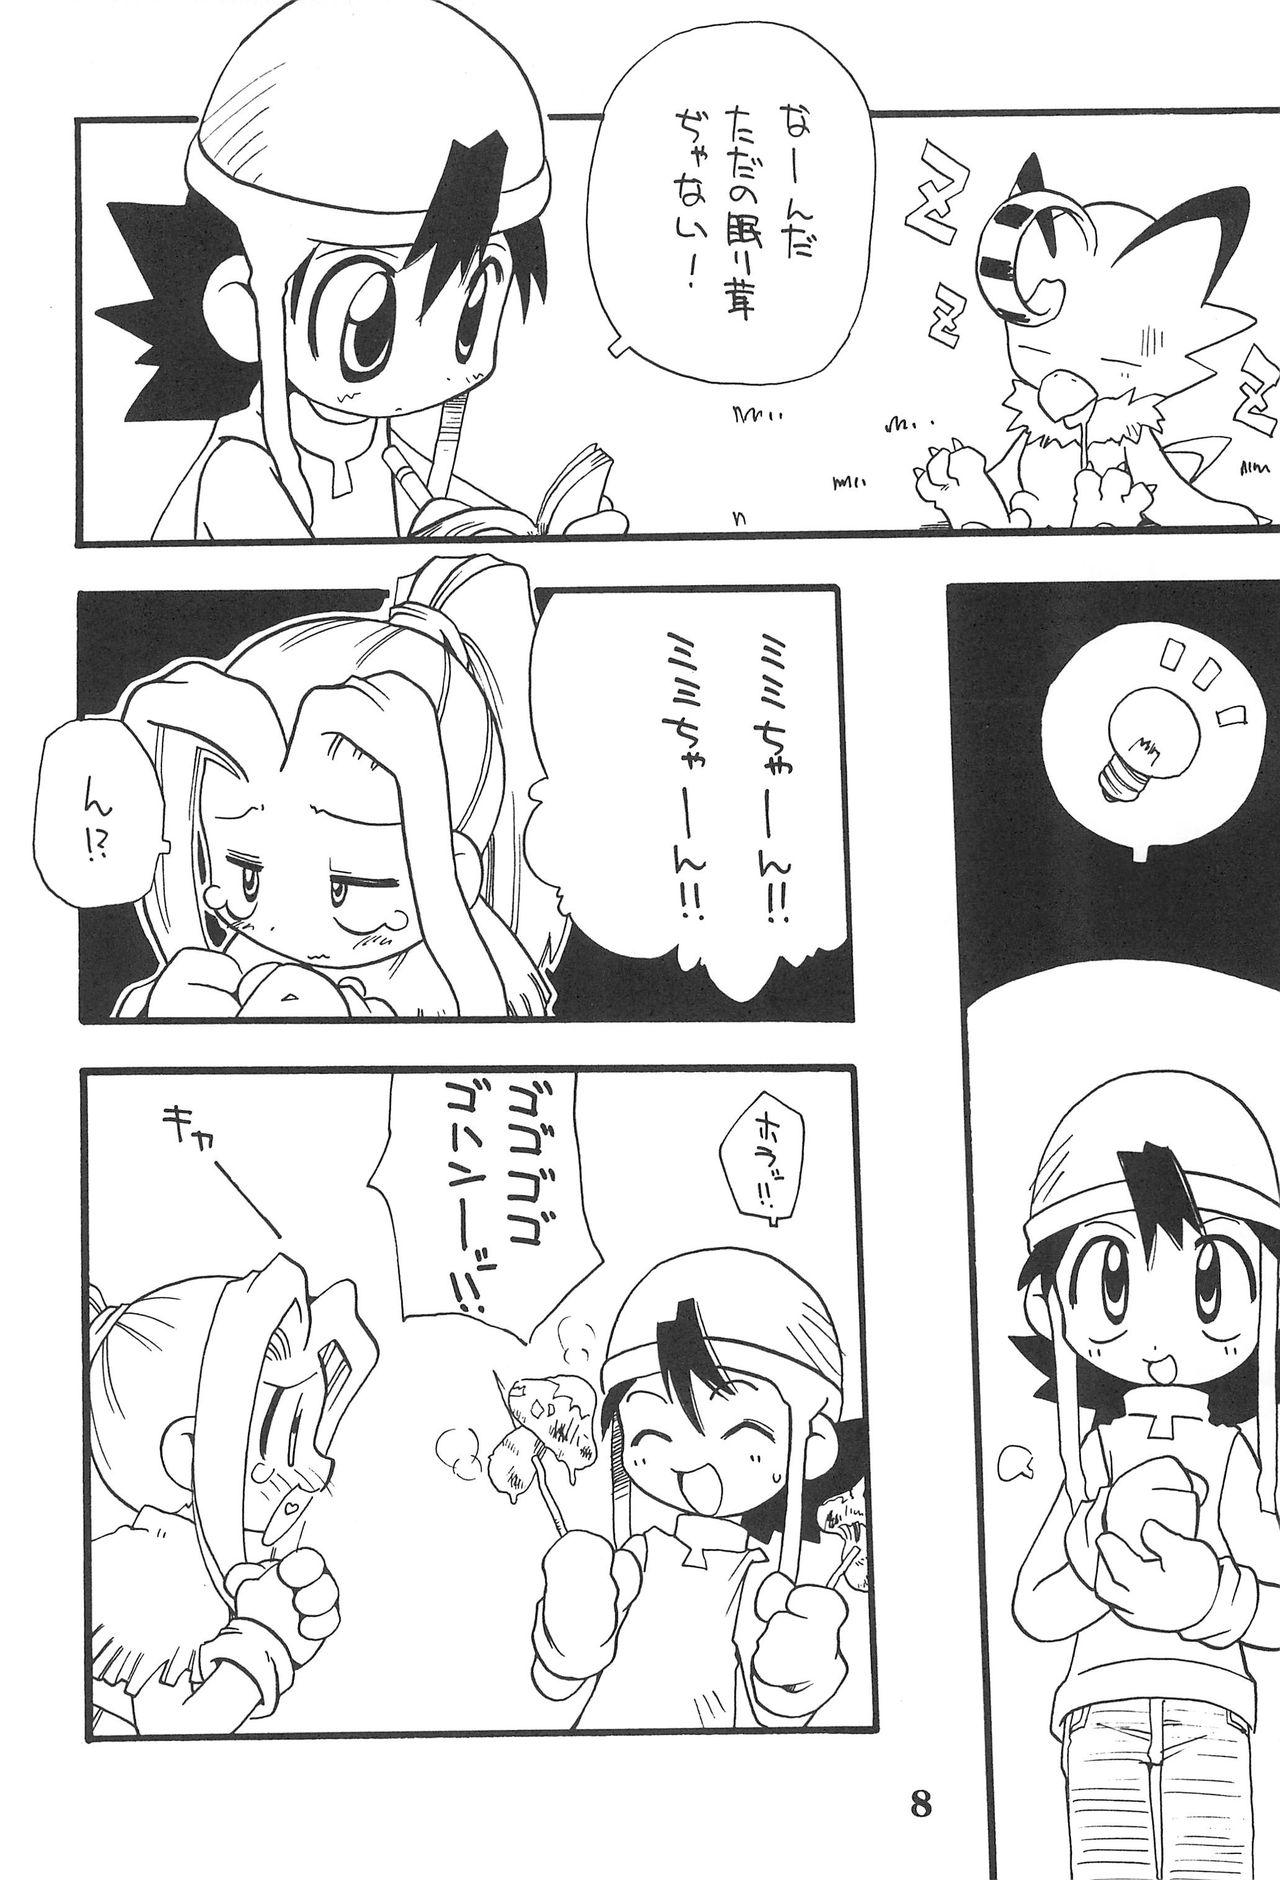 Outdoor K8 KICHIKU BOOK8 COSTOM - Digimon adventure Kashima - Page 8